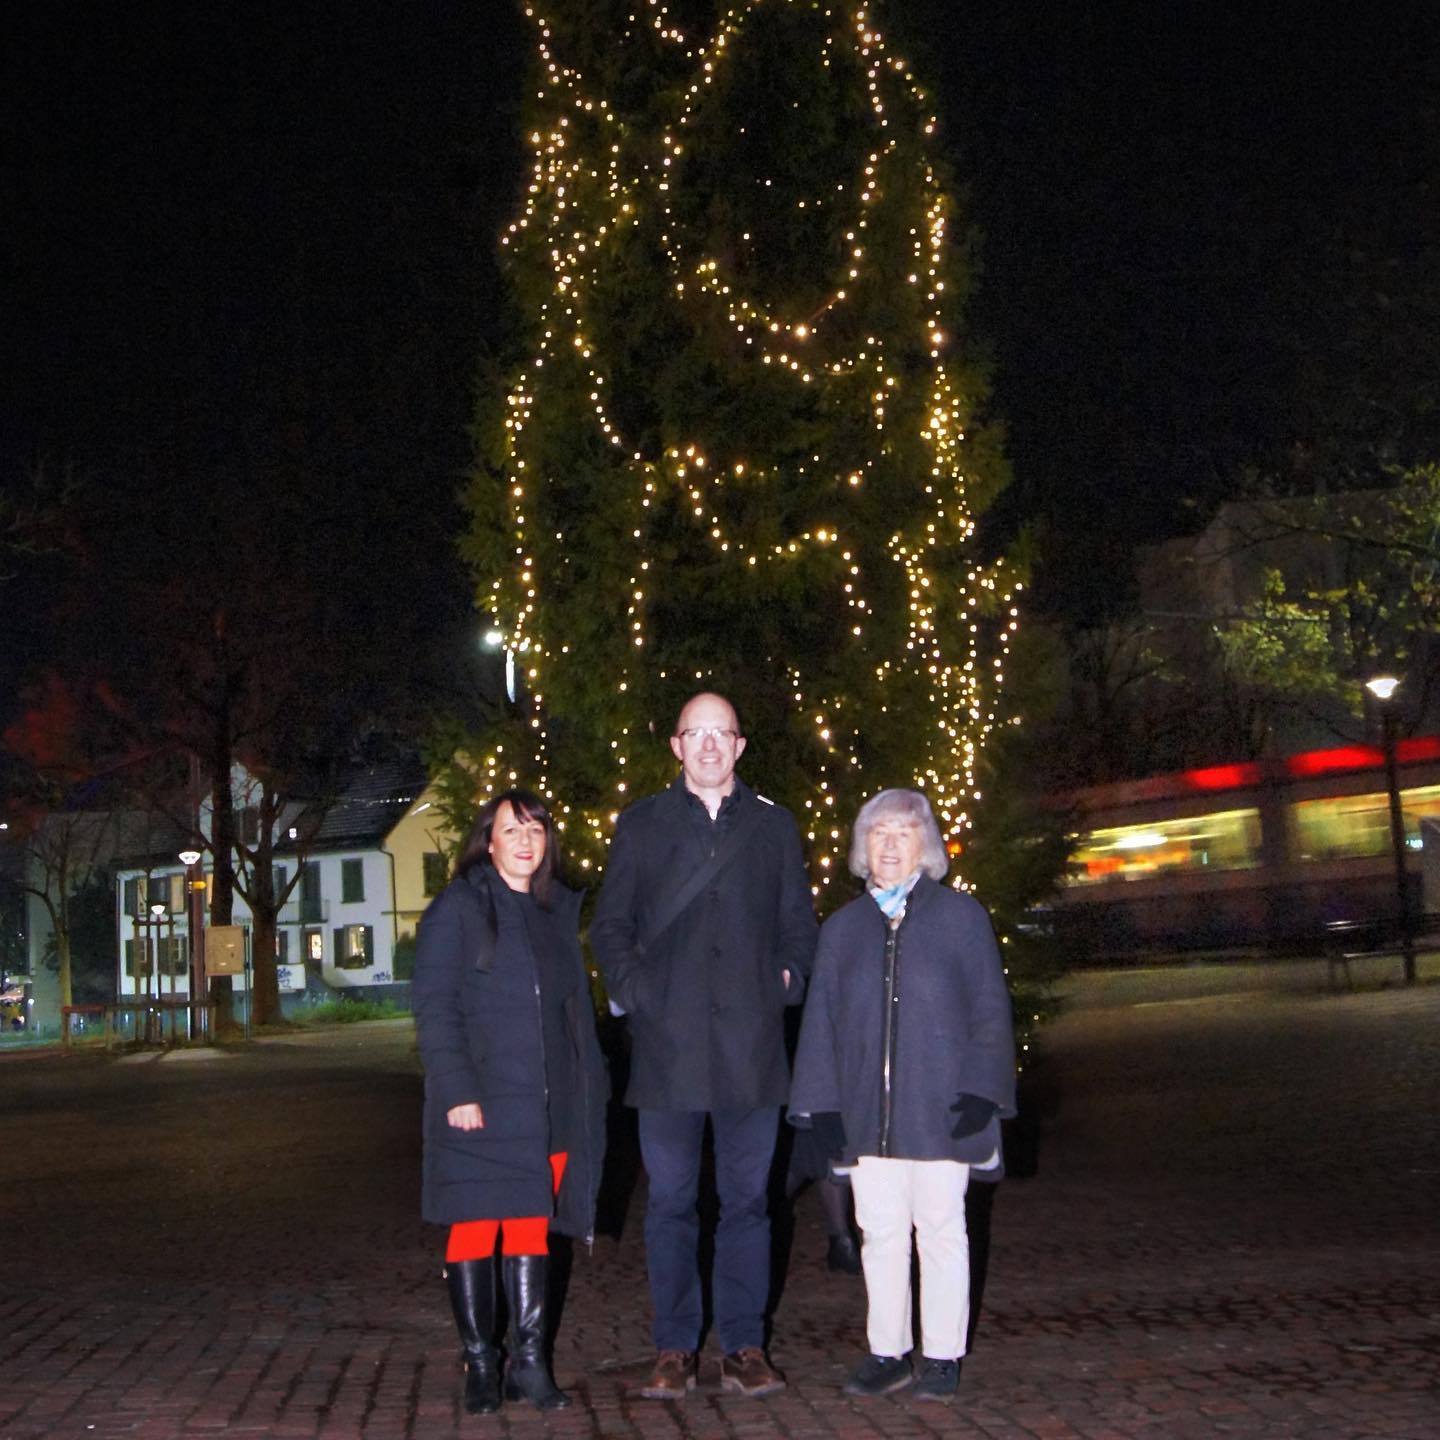 #Advent in #Schwamendingen ist, wenn der #Weihnachtsbaum auf dem Dorfplatz leuchtet. Heute eröffnet von #Quartierverein , #Zunft & #Gewerbeverein zusammen mit der Bevölkerung und grossartigem Apéro vom Rest. #SchwamEdinge